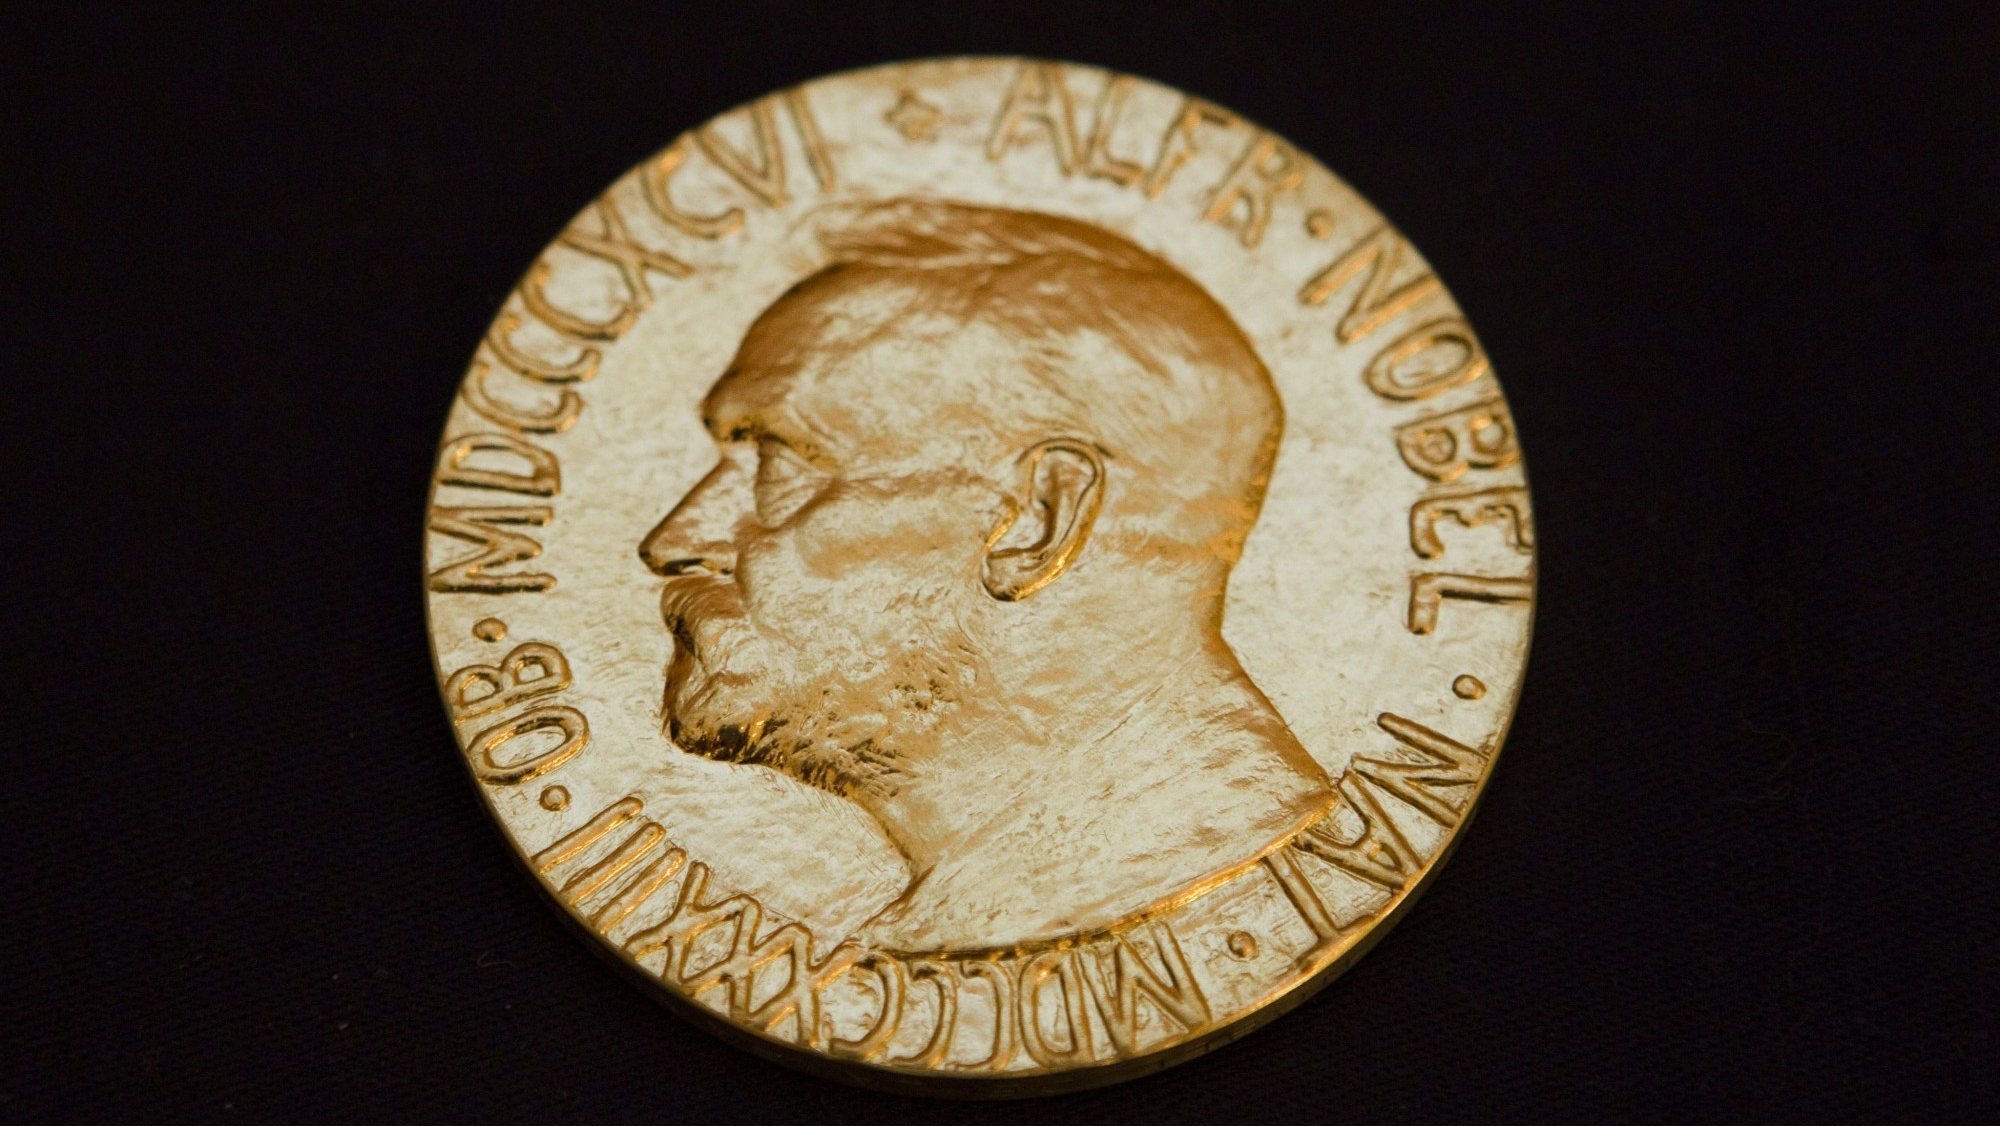 Uma imagem de uma medalha do prémio Nobel